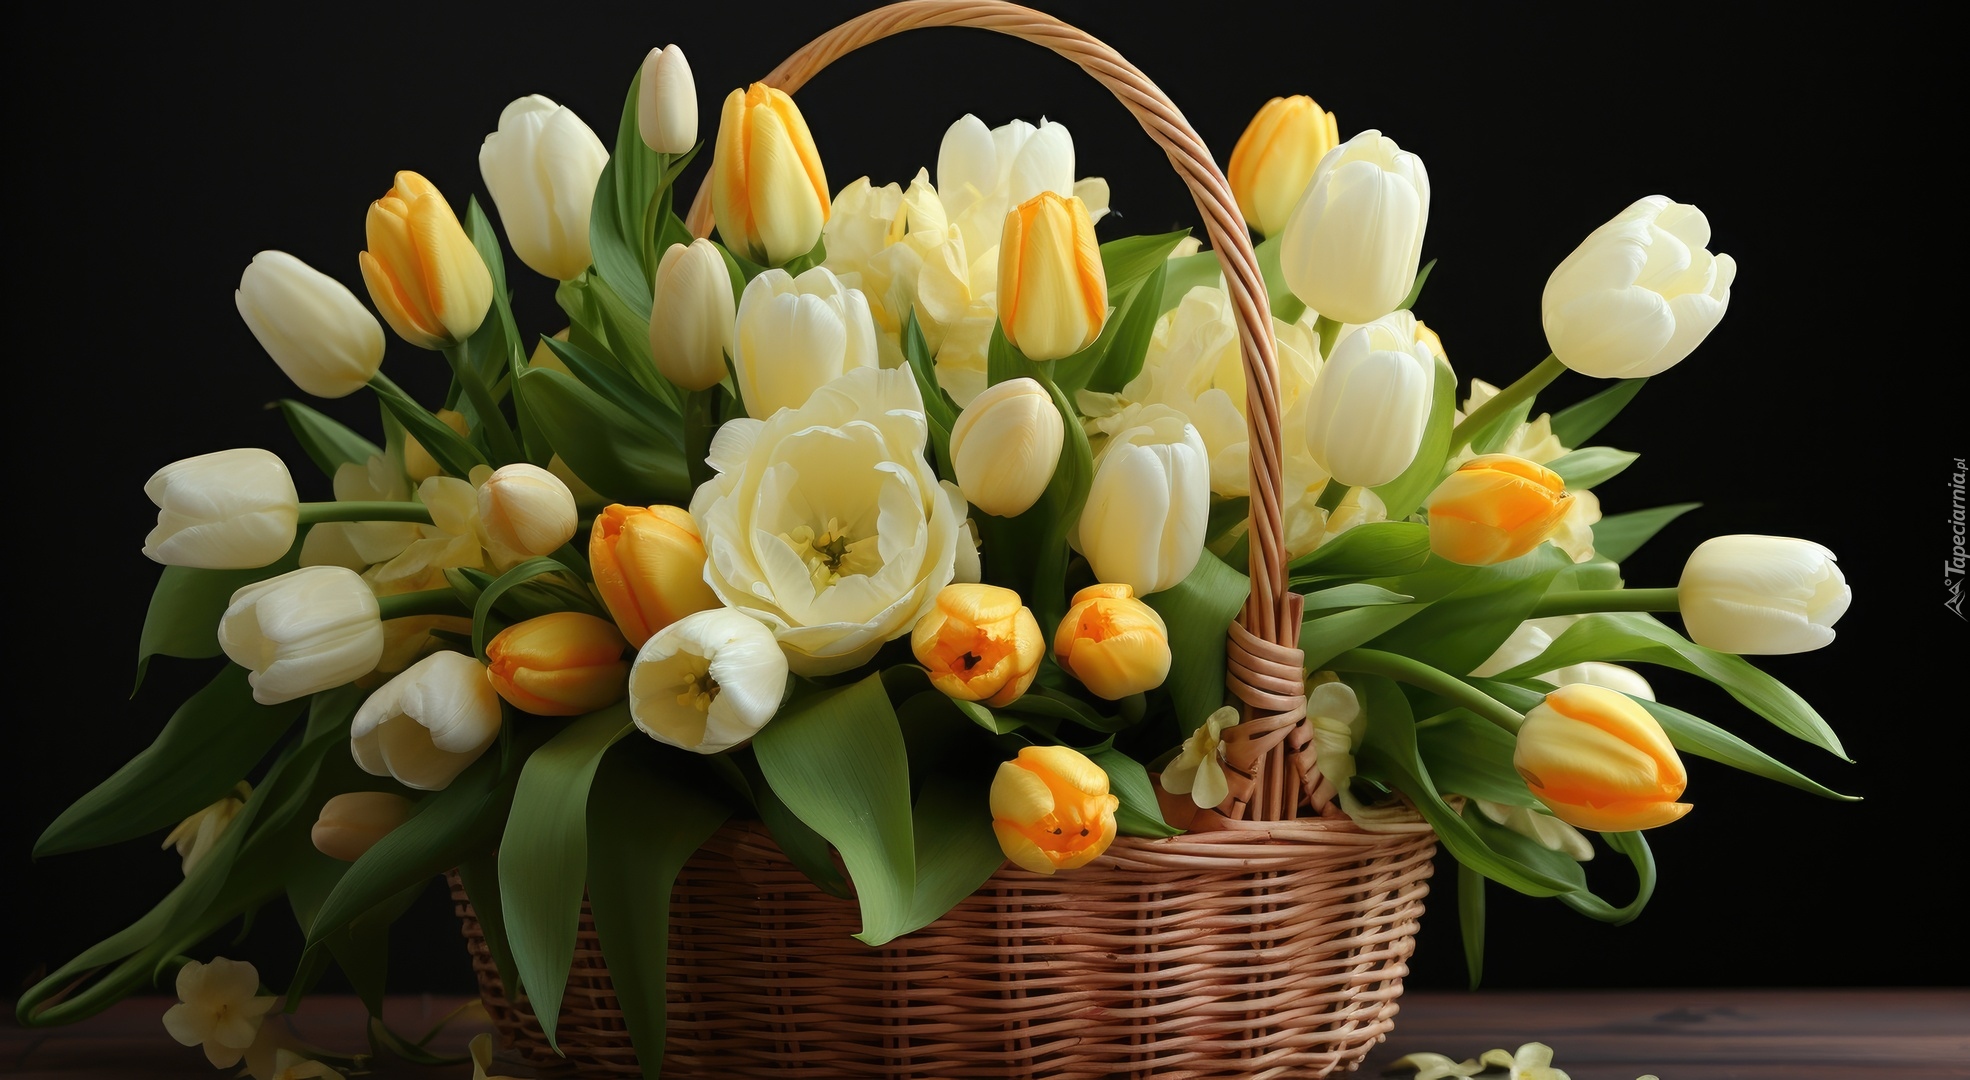 Kwiaty, Białe, Żółte, Tulipany, Listki, Koszyk